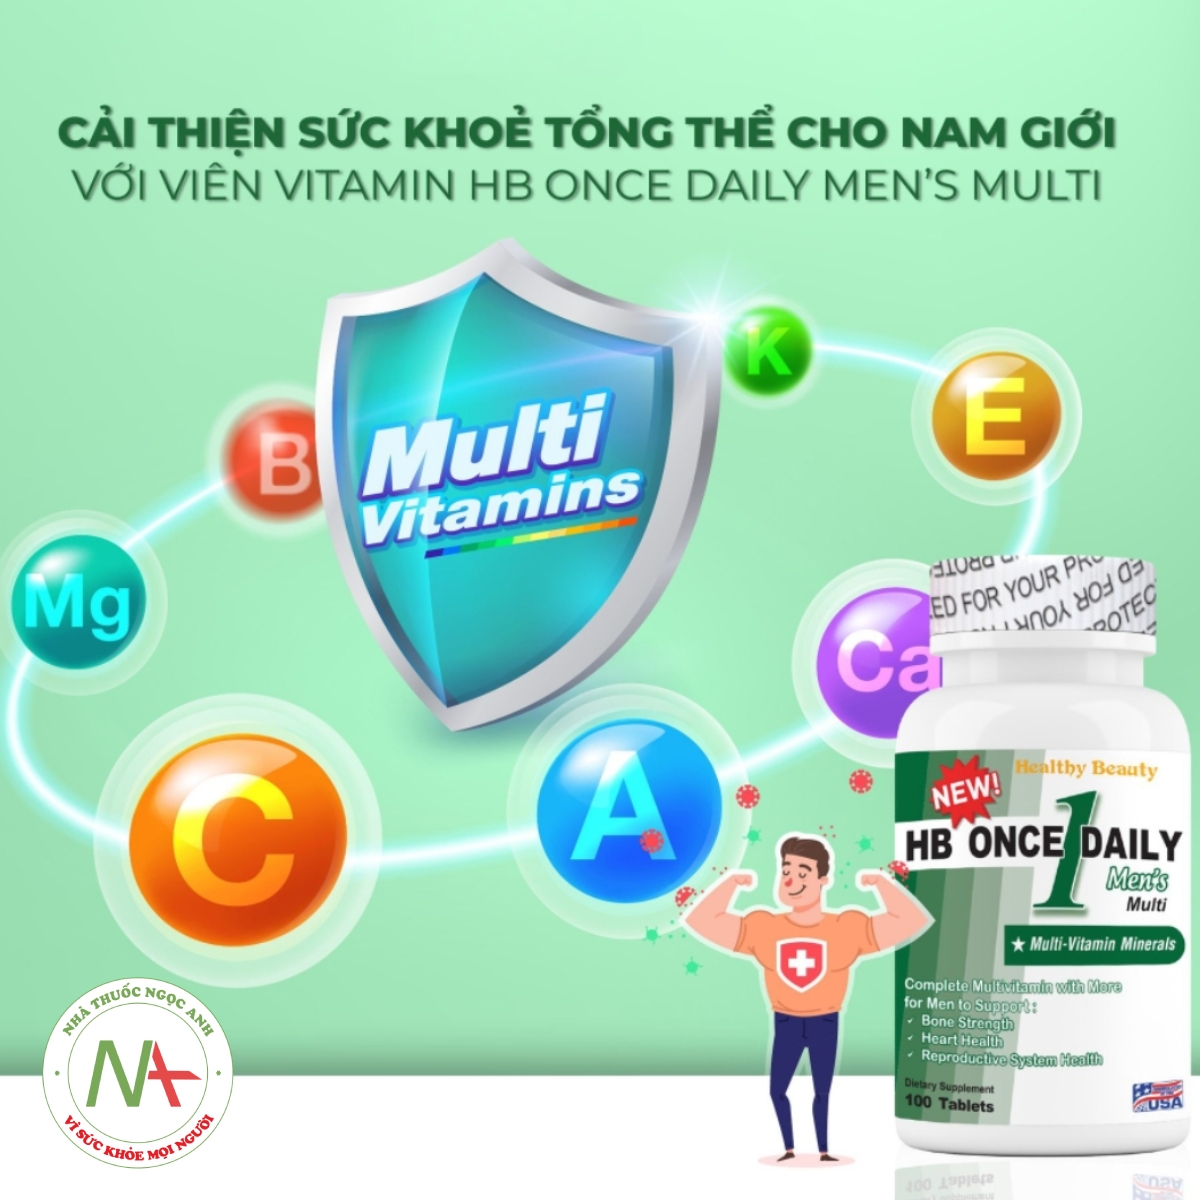 HB Once Daily Men’s Multi bổ sung nhiều vitamin và khoáng chất cho cơ thể